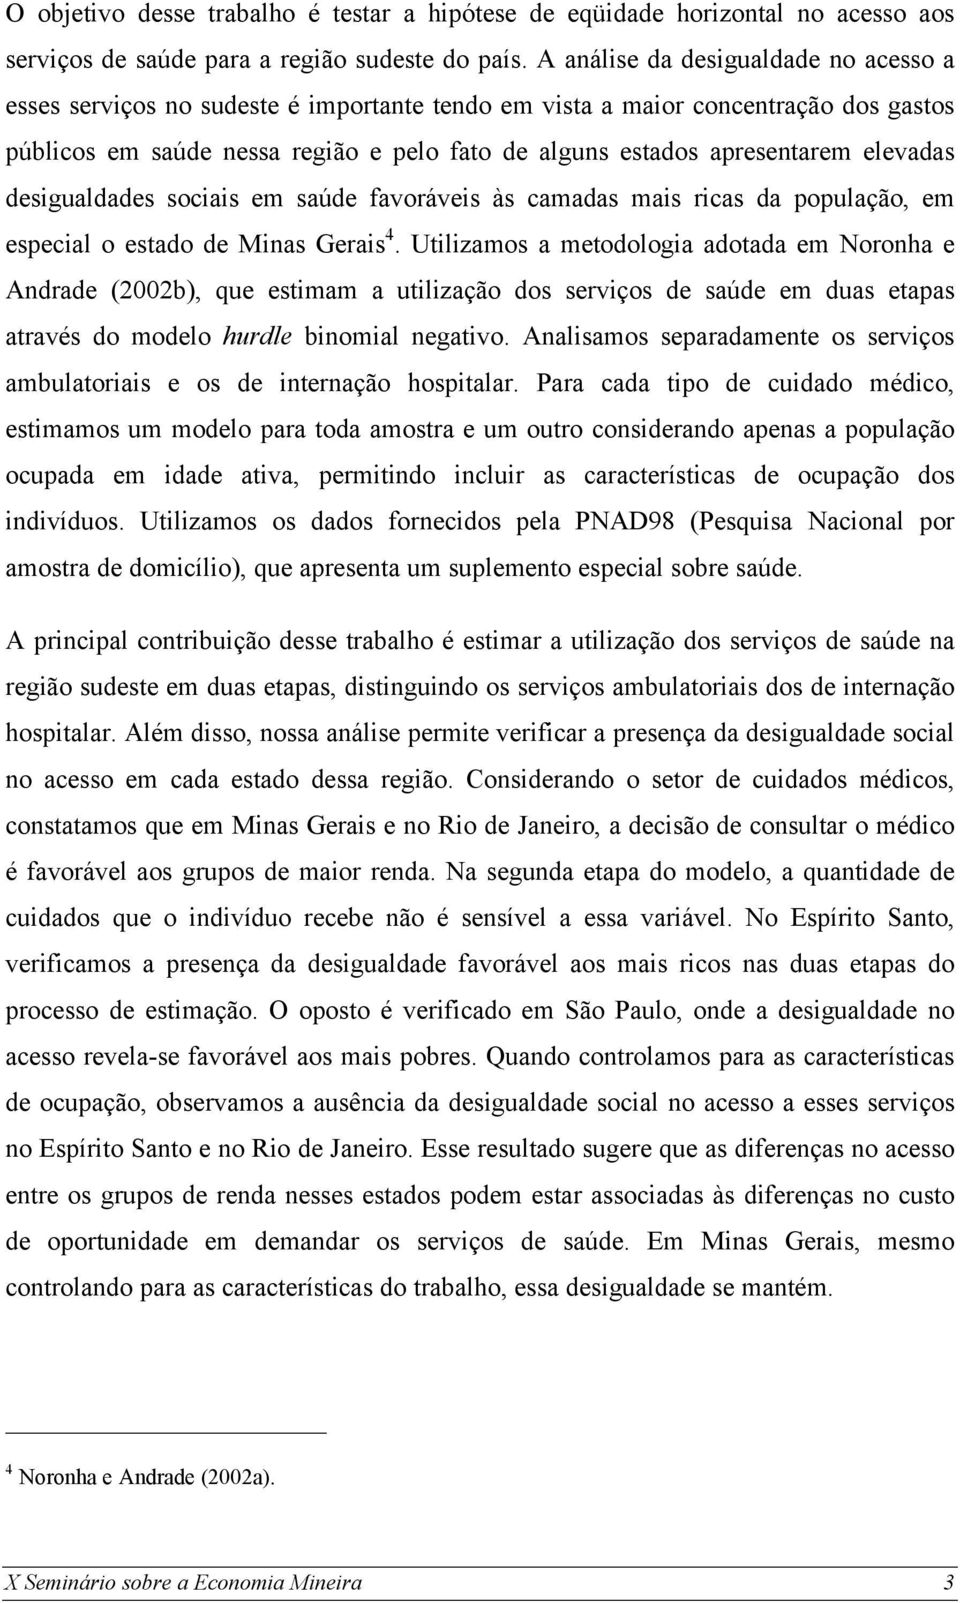 elevadas desigualdades sociais em saúde favoráveis às camadas mais ricas da população, em especial o estado de Minas Gerais 4.